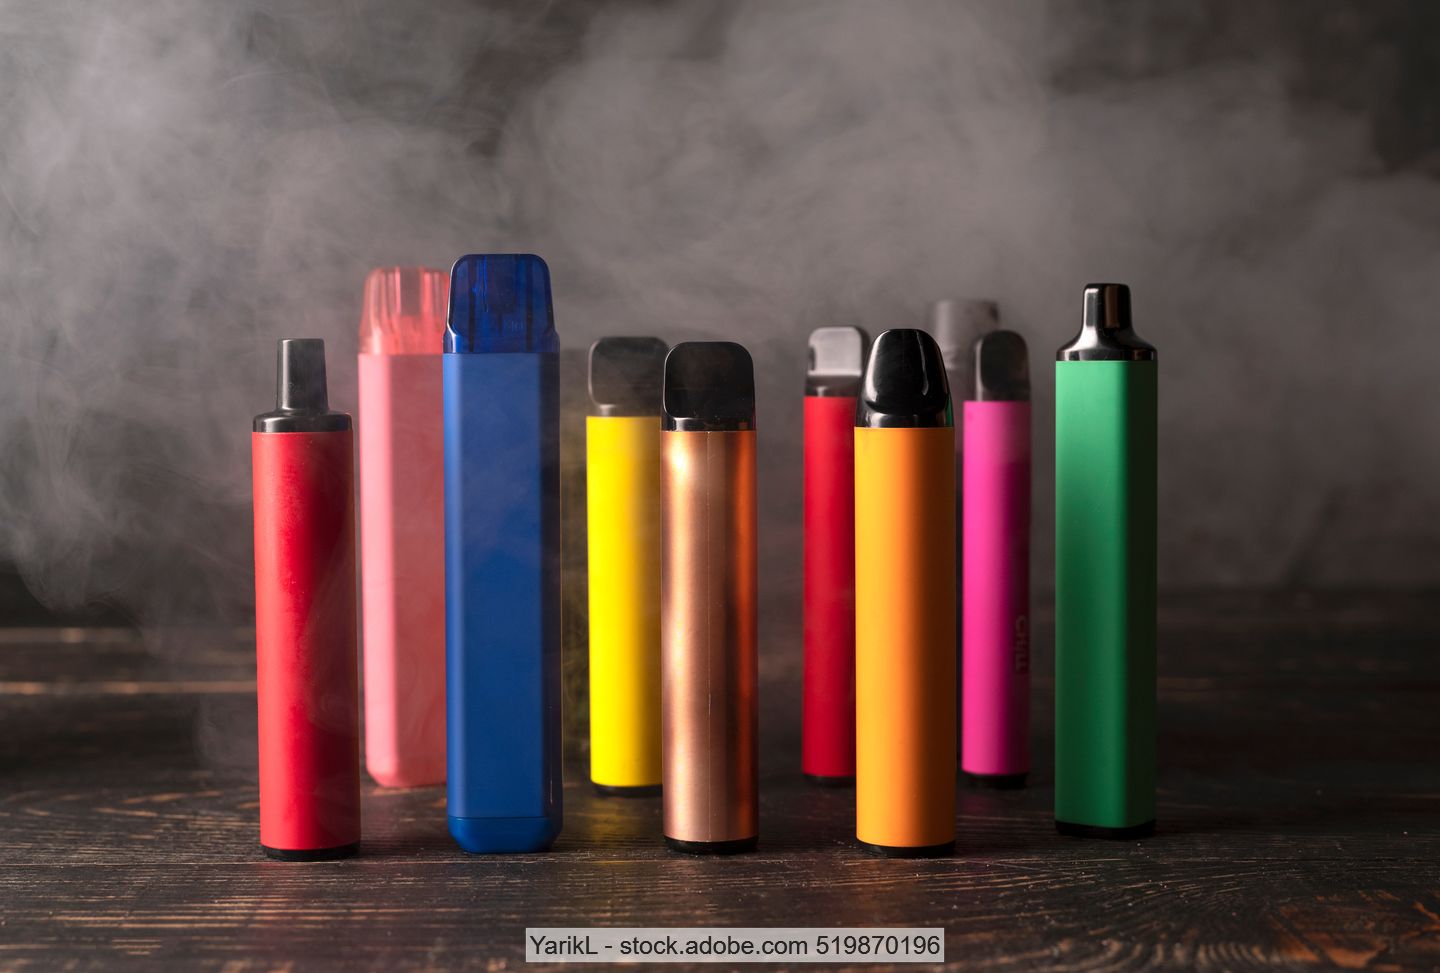 E-Zigaretten in verschiedenen Farben und Größen, teilweise umhüllt von Rauch auf Holzuntergrund